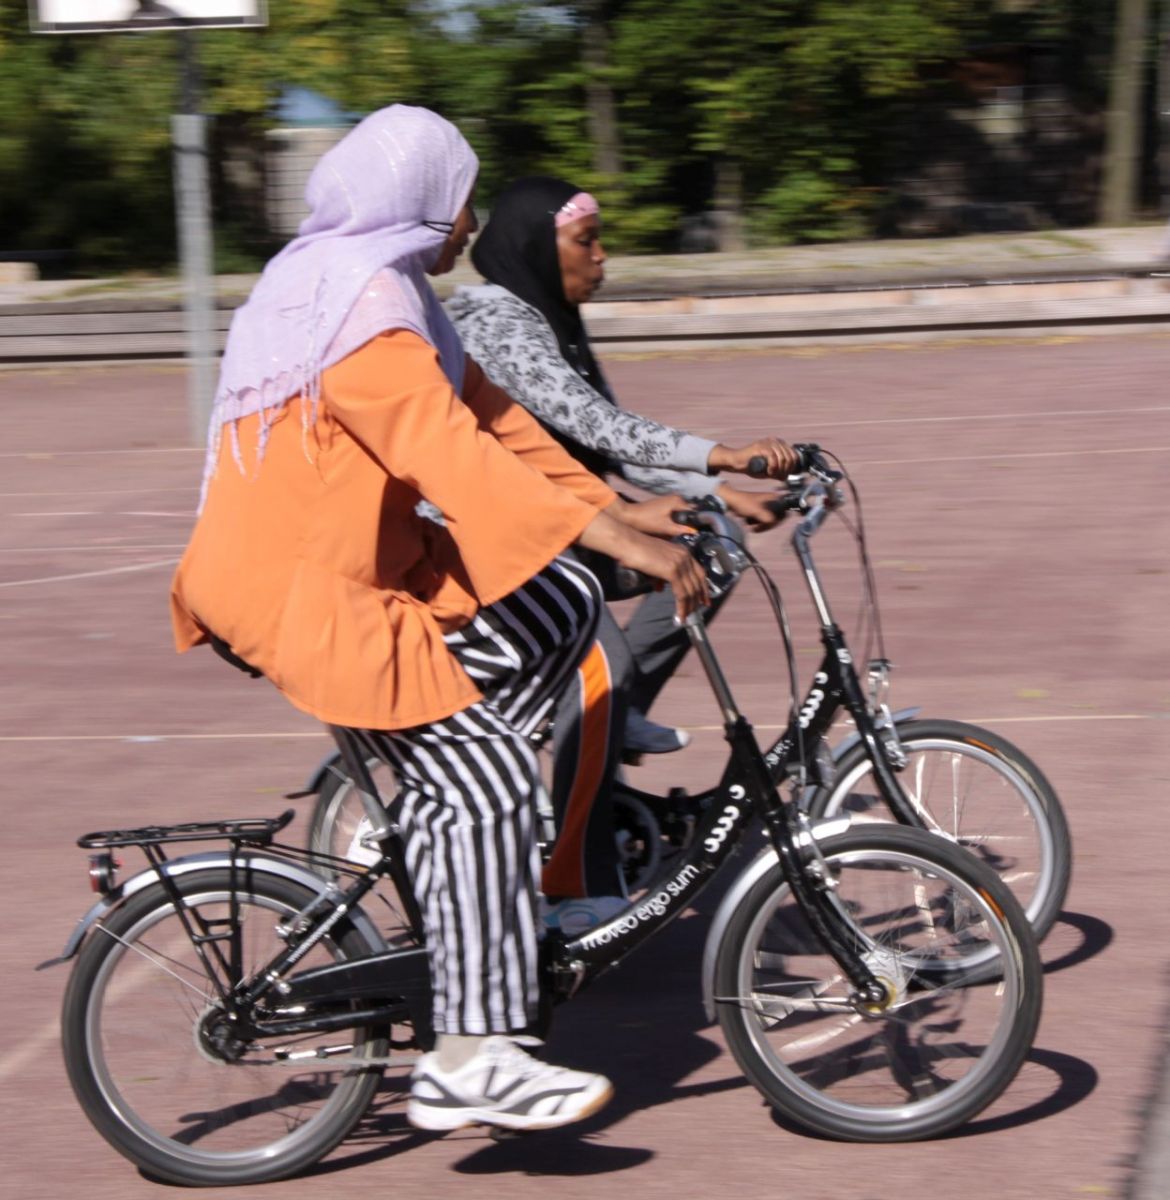 Zwei Frauen üben auf einem Sportplatz Fahrrad fahren.